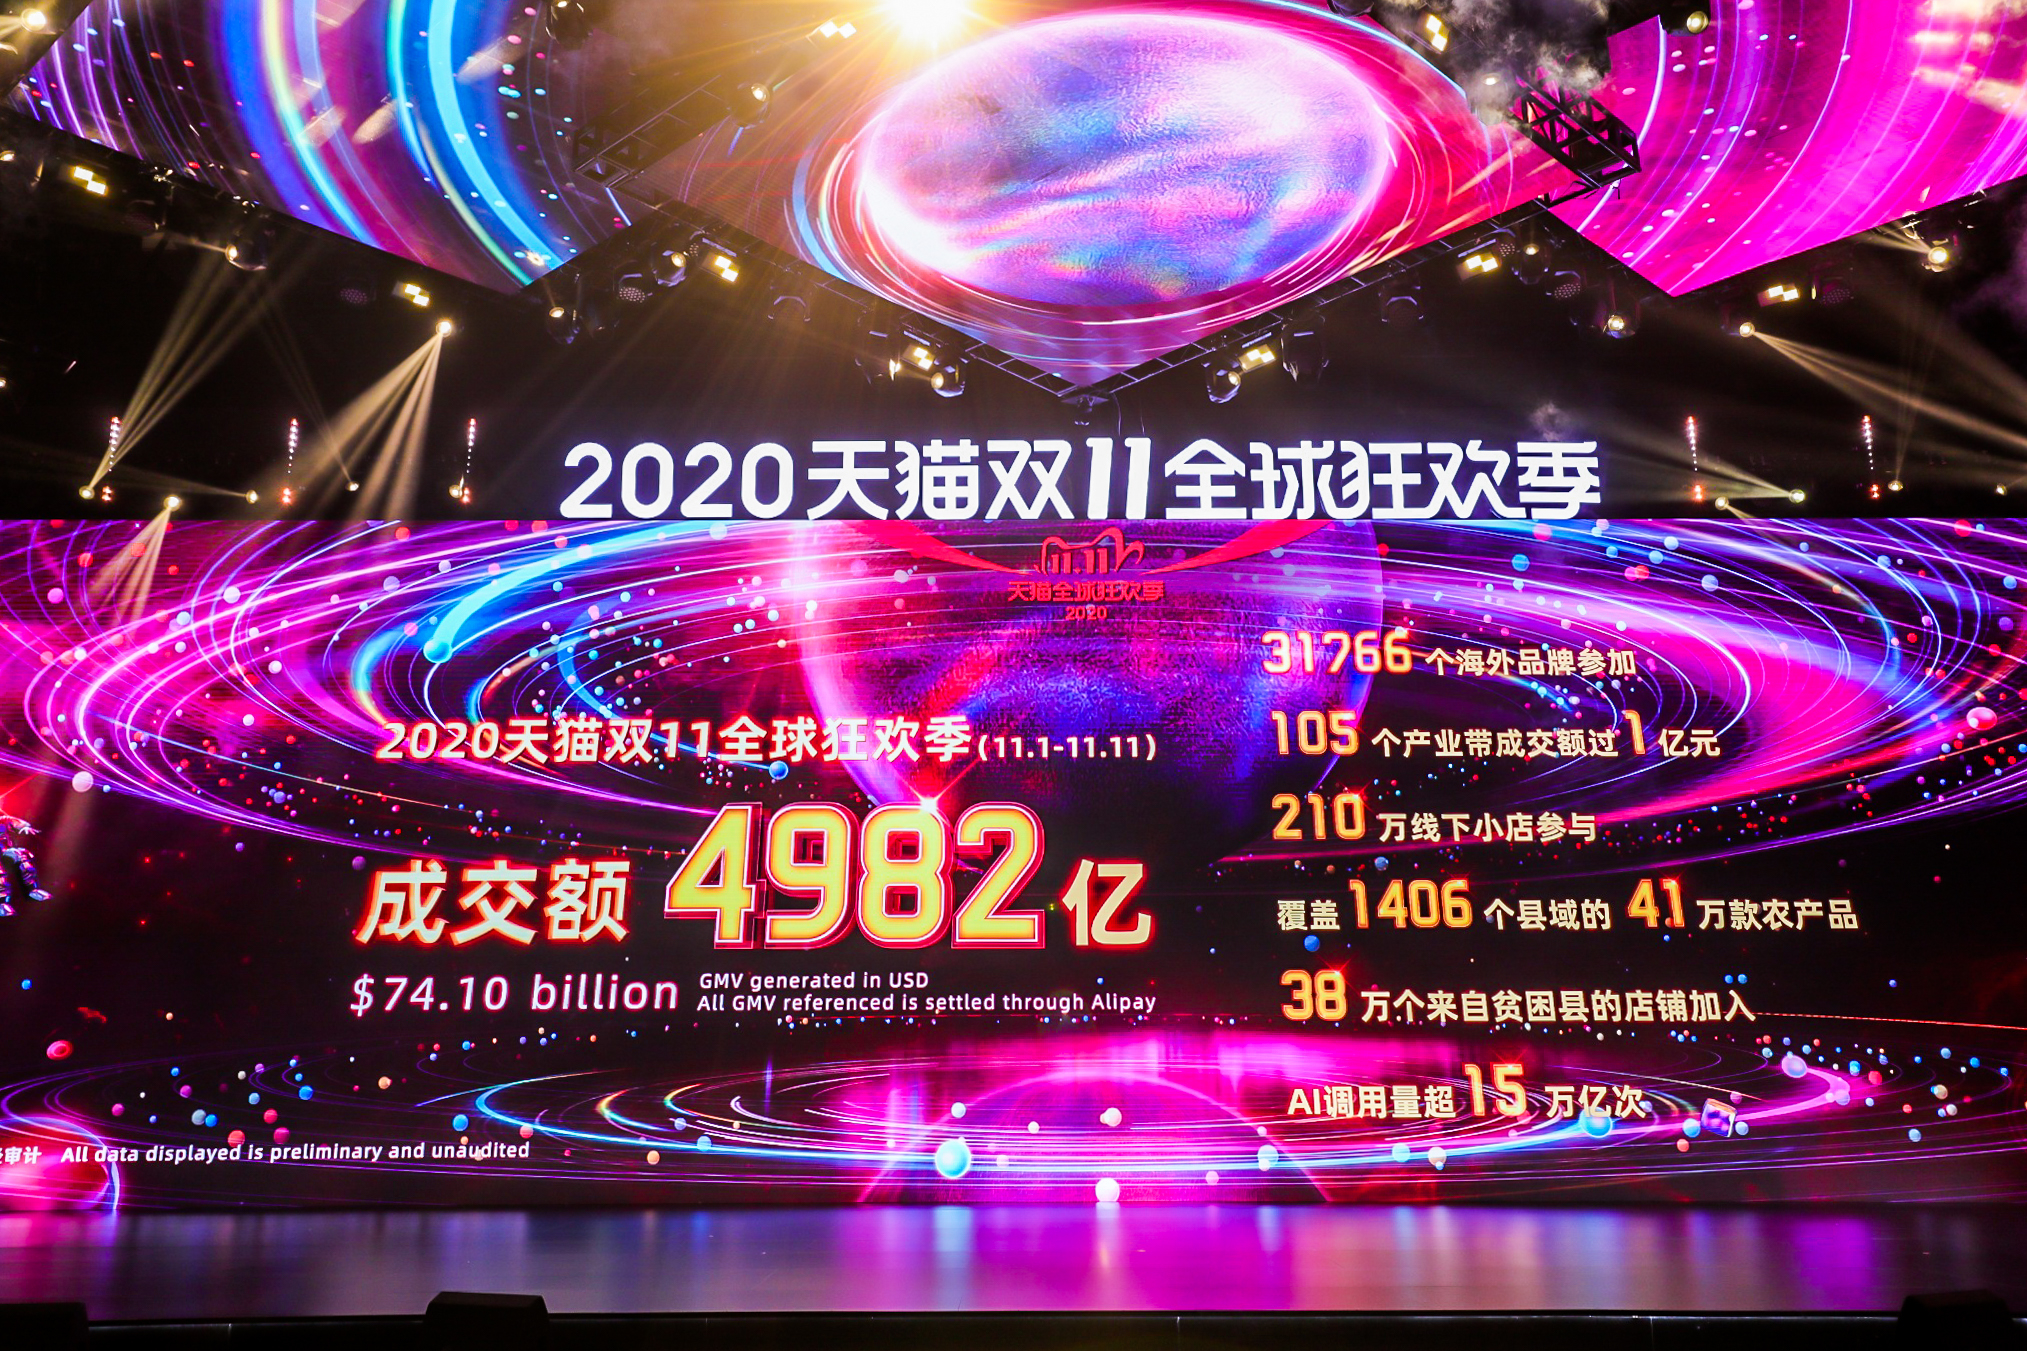 2020天猫ダブルイレブン最終GMV発表の様子（11月12日未明、中国・杭州市）.jpg